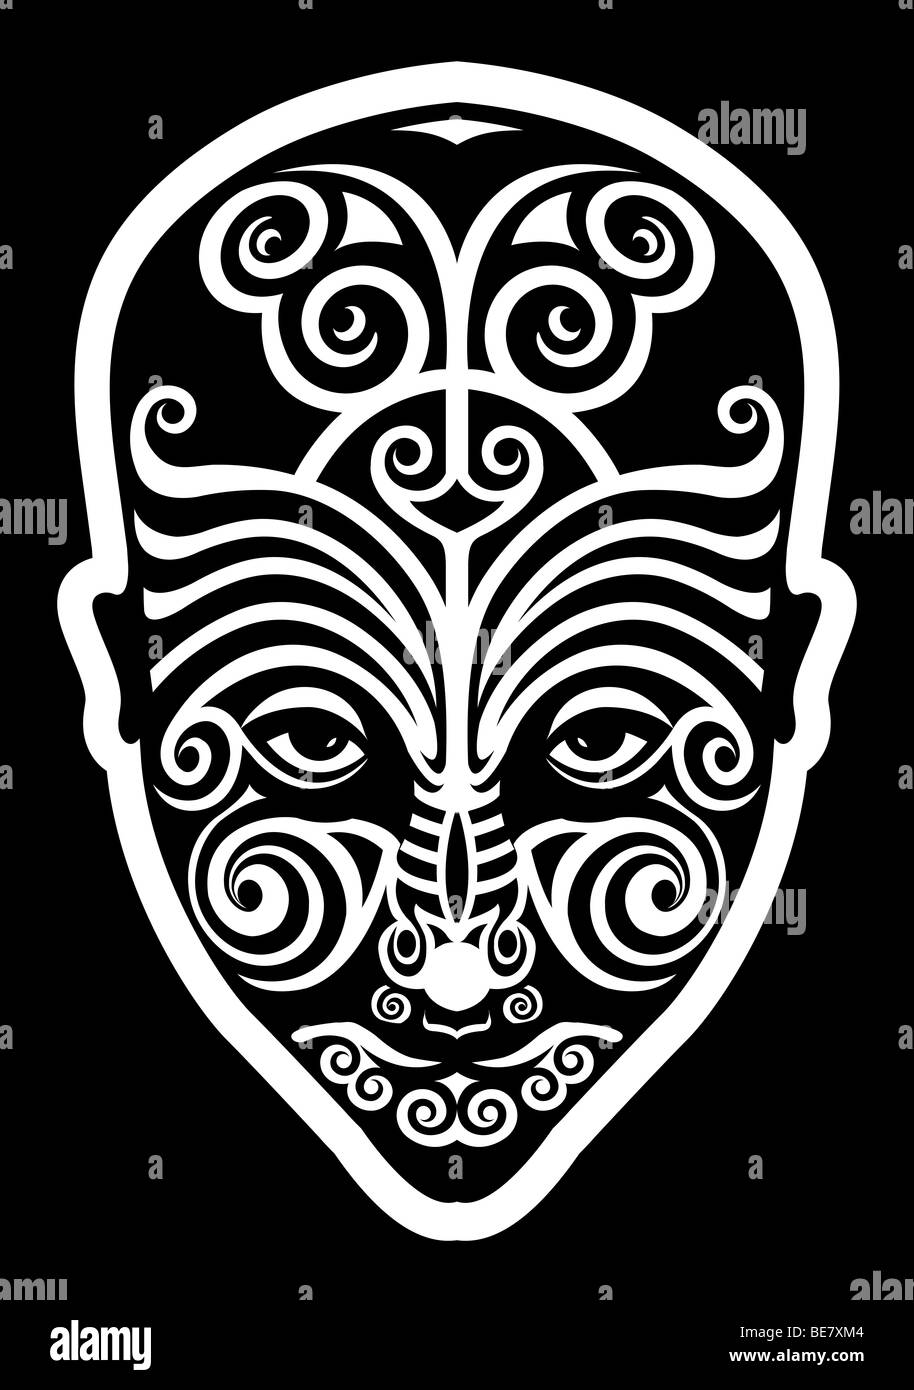 Traditionnel maori stylisée face tribal tatouage d'autochtones en Nouvelle Zélande Banque D'Images